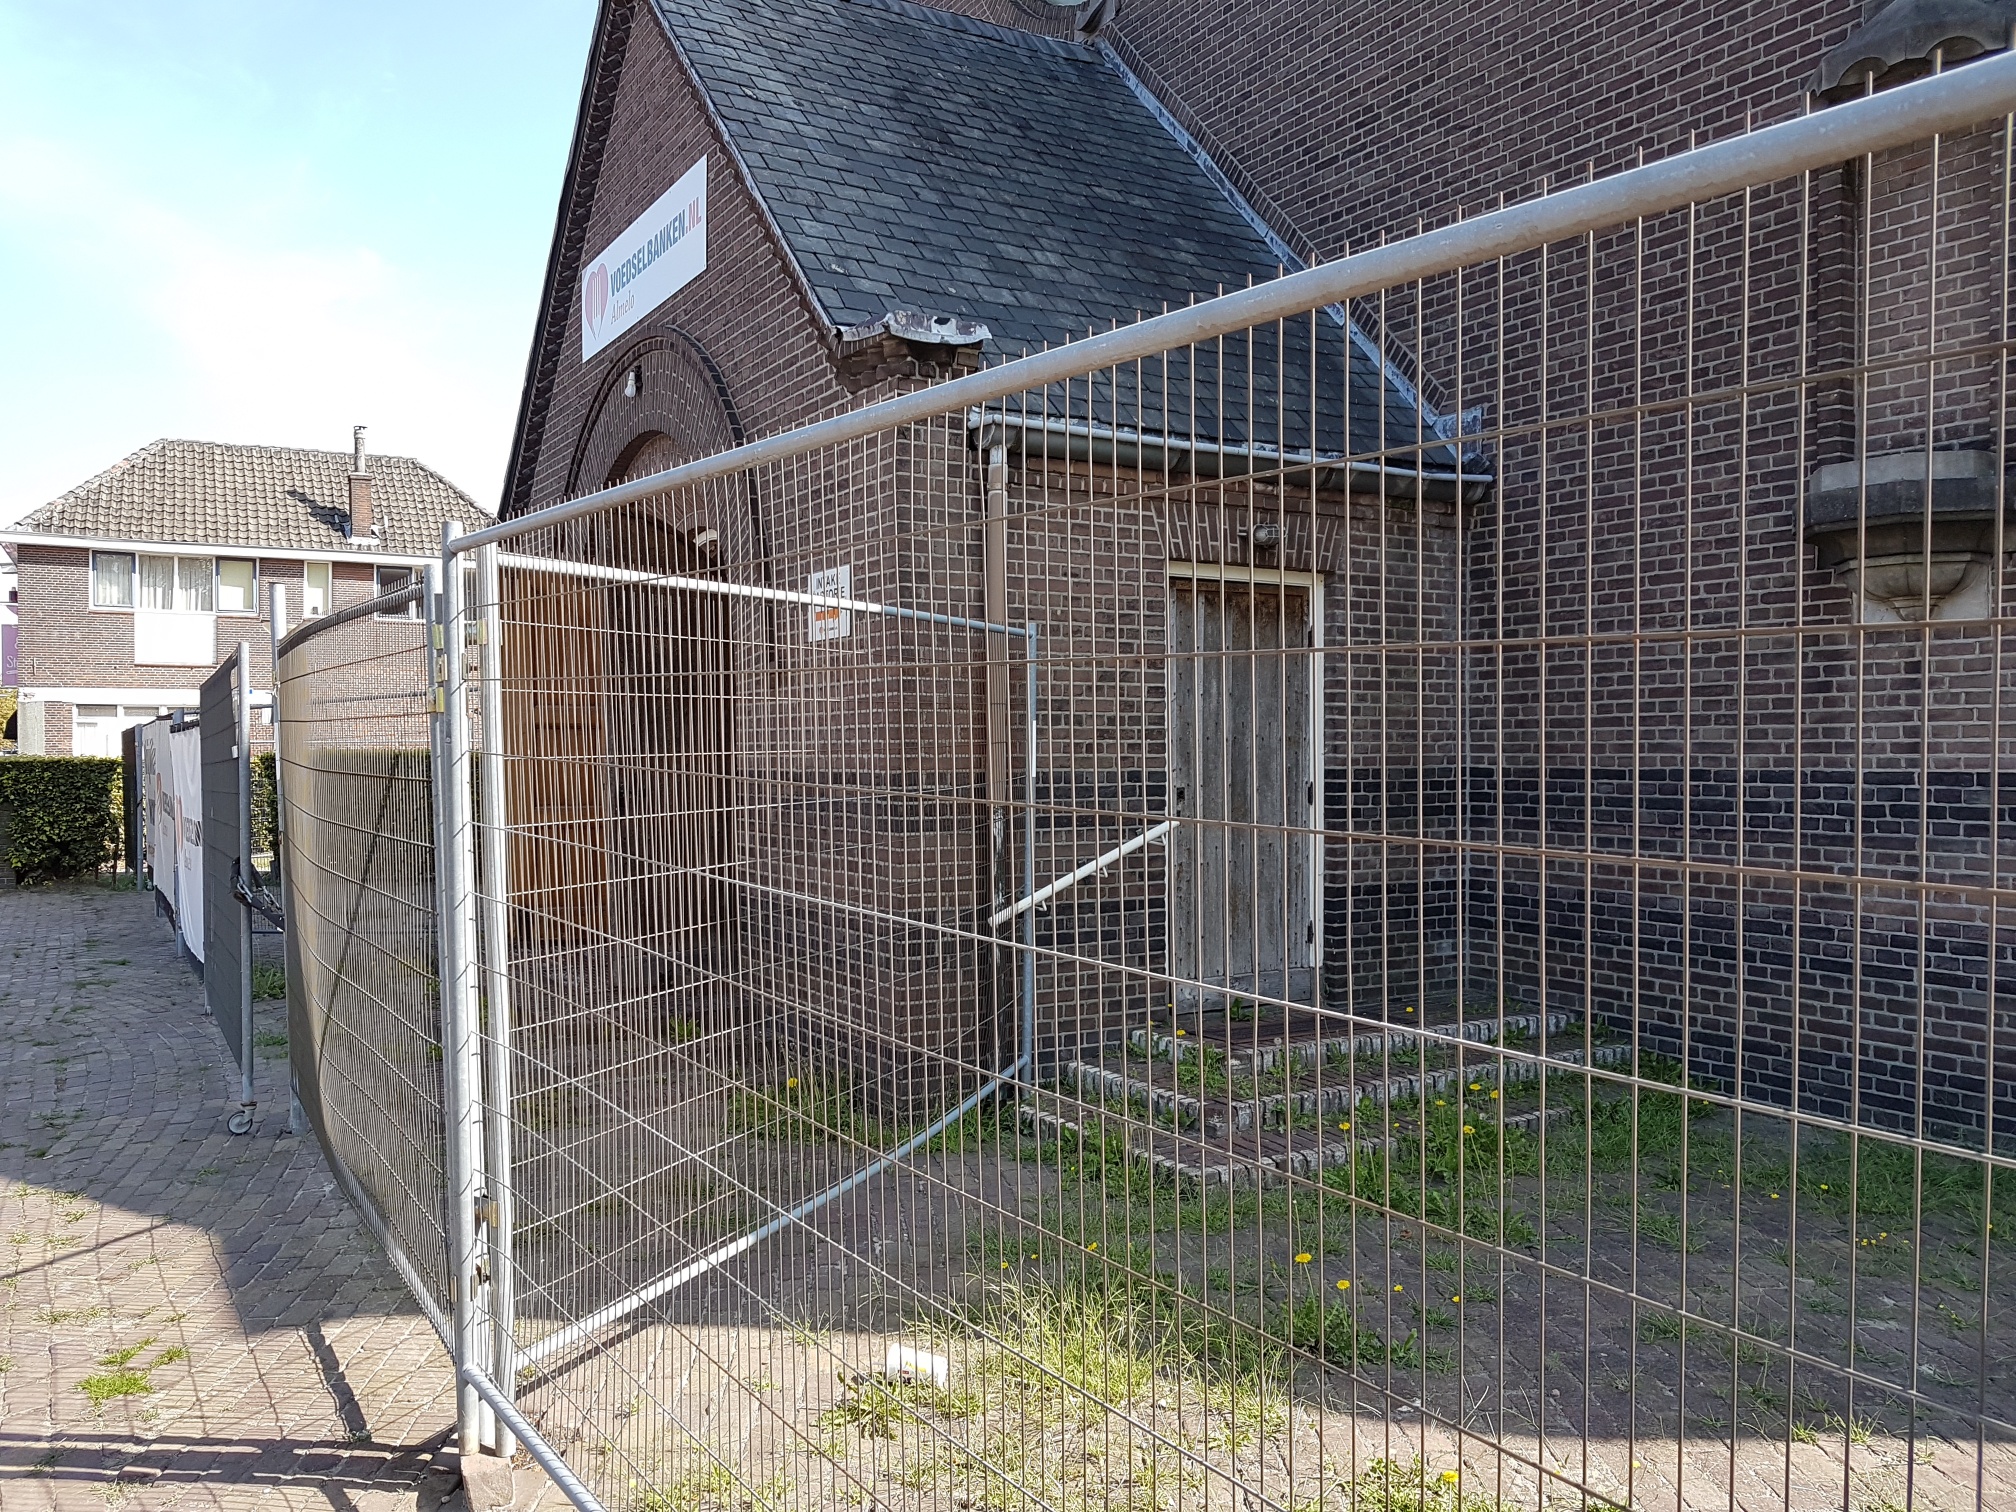 De Egbertuskerk in Almelo had opknapbeurt nodig: “Er was gevaar voor vallende dakplaten”